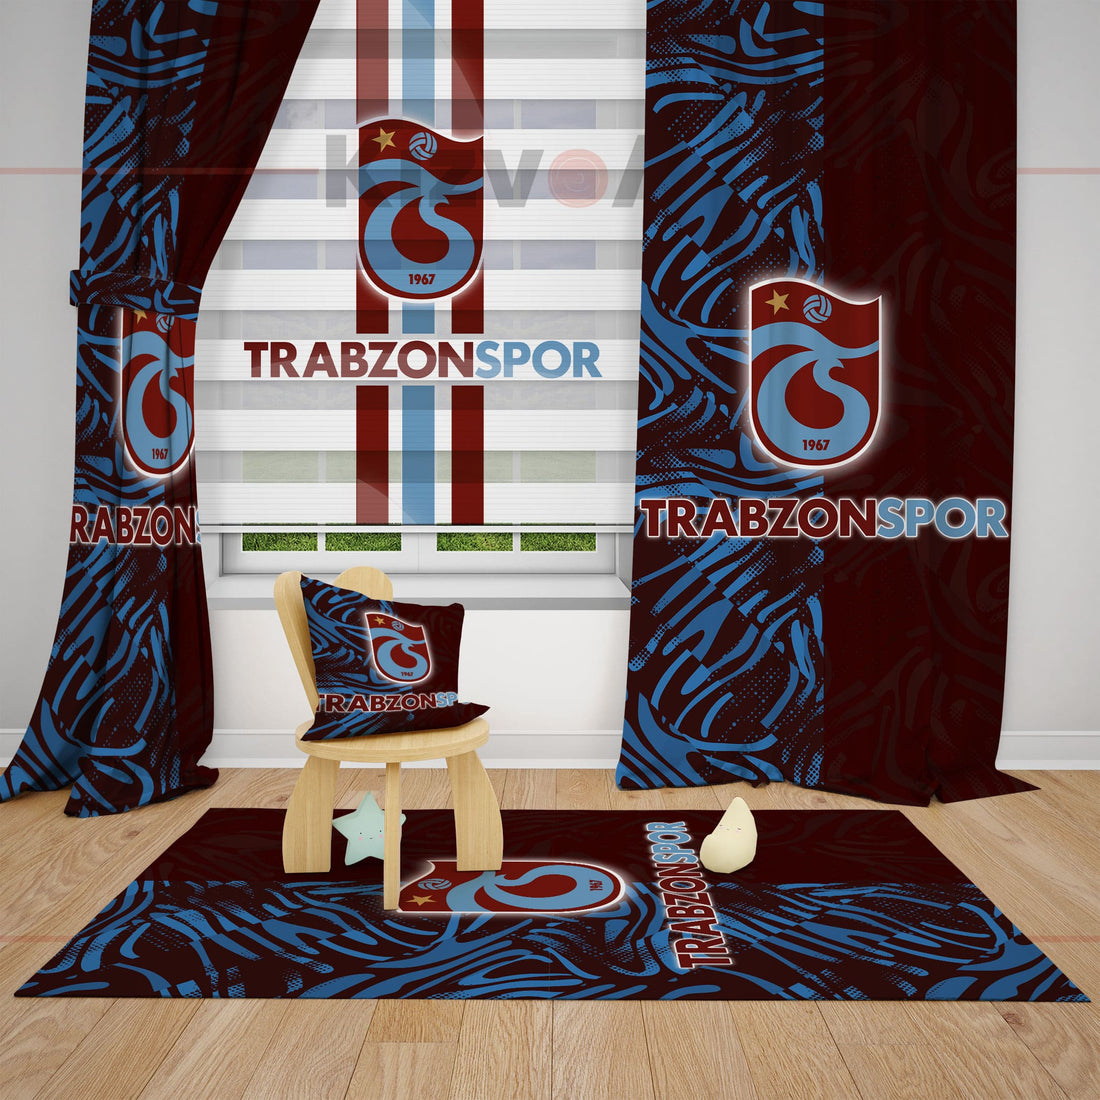 Trabzonspor Çocuk Odası Fon Perde